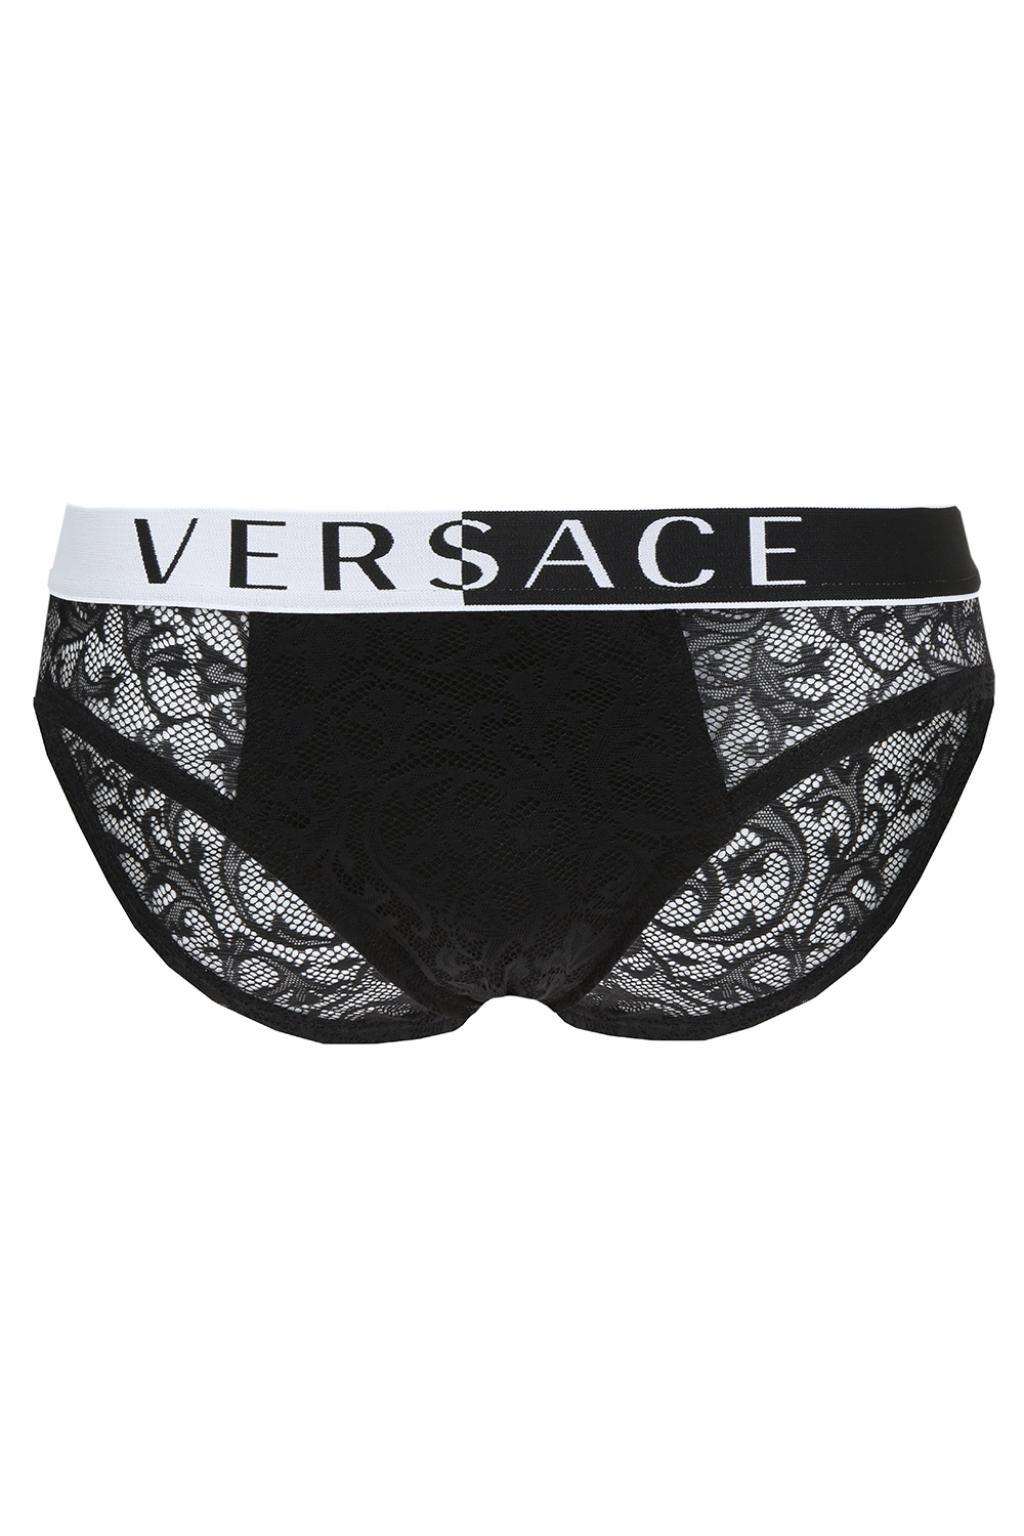 Versace Luxe Lace Midi Men's Brief Black 